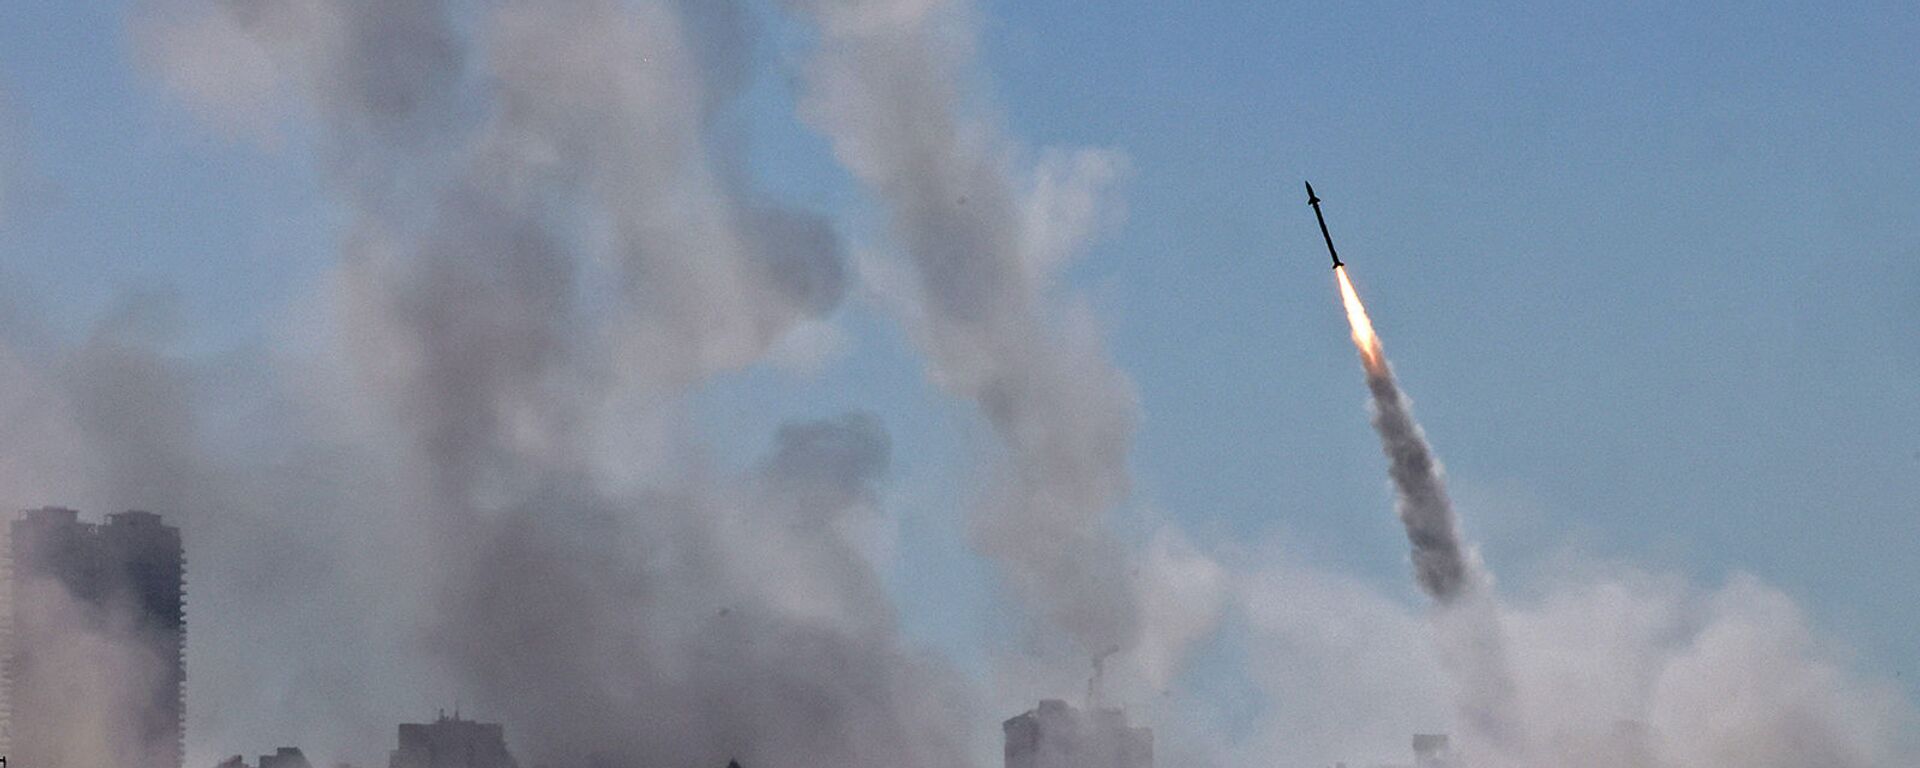 Система противовоздушной обороны Израиля Iron Dome активирована для перехвата ракеты, запущенной из сектора Газа, контролируемого палестинским движением ХАМАС (12 мая 2021). Ашдод - Sputnik Արմենիա, 1920, 17.05.2021